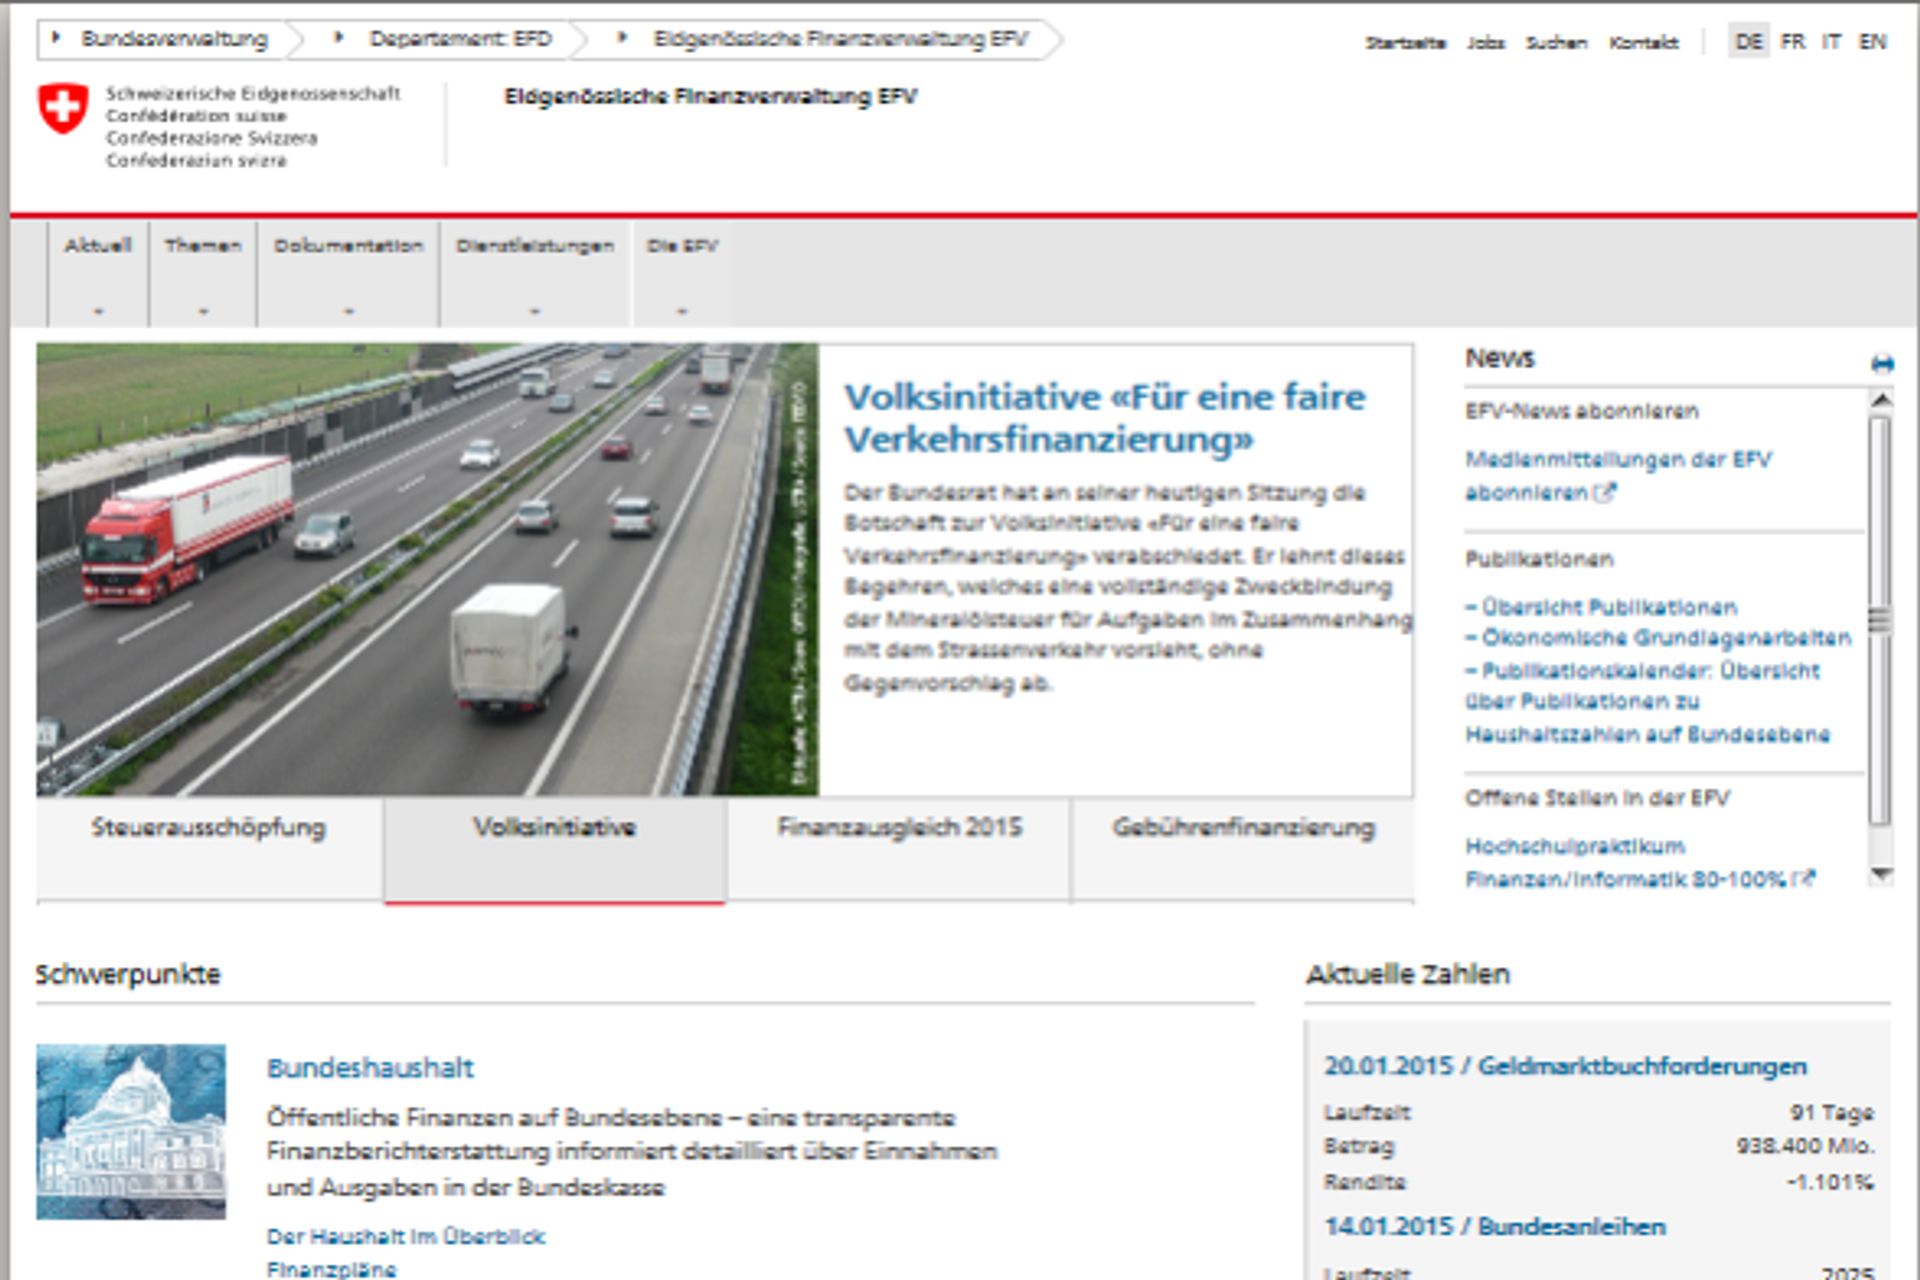 Il web design dei siti dell'amministrazione federale della Confederazione Svizzera